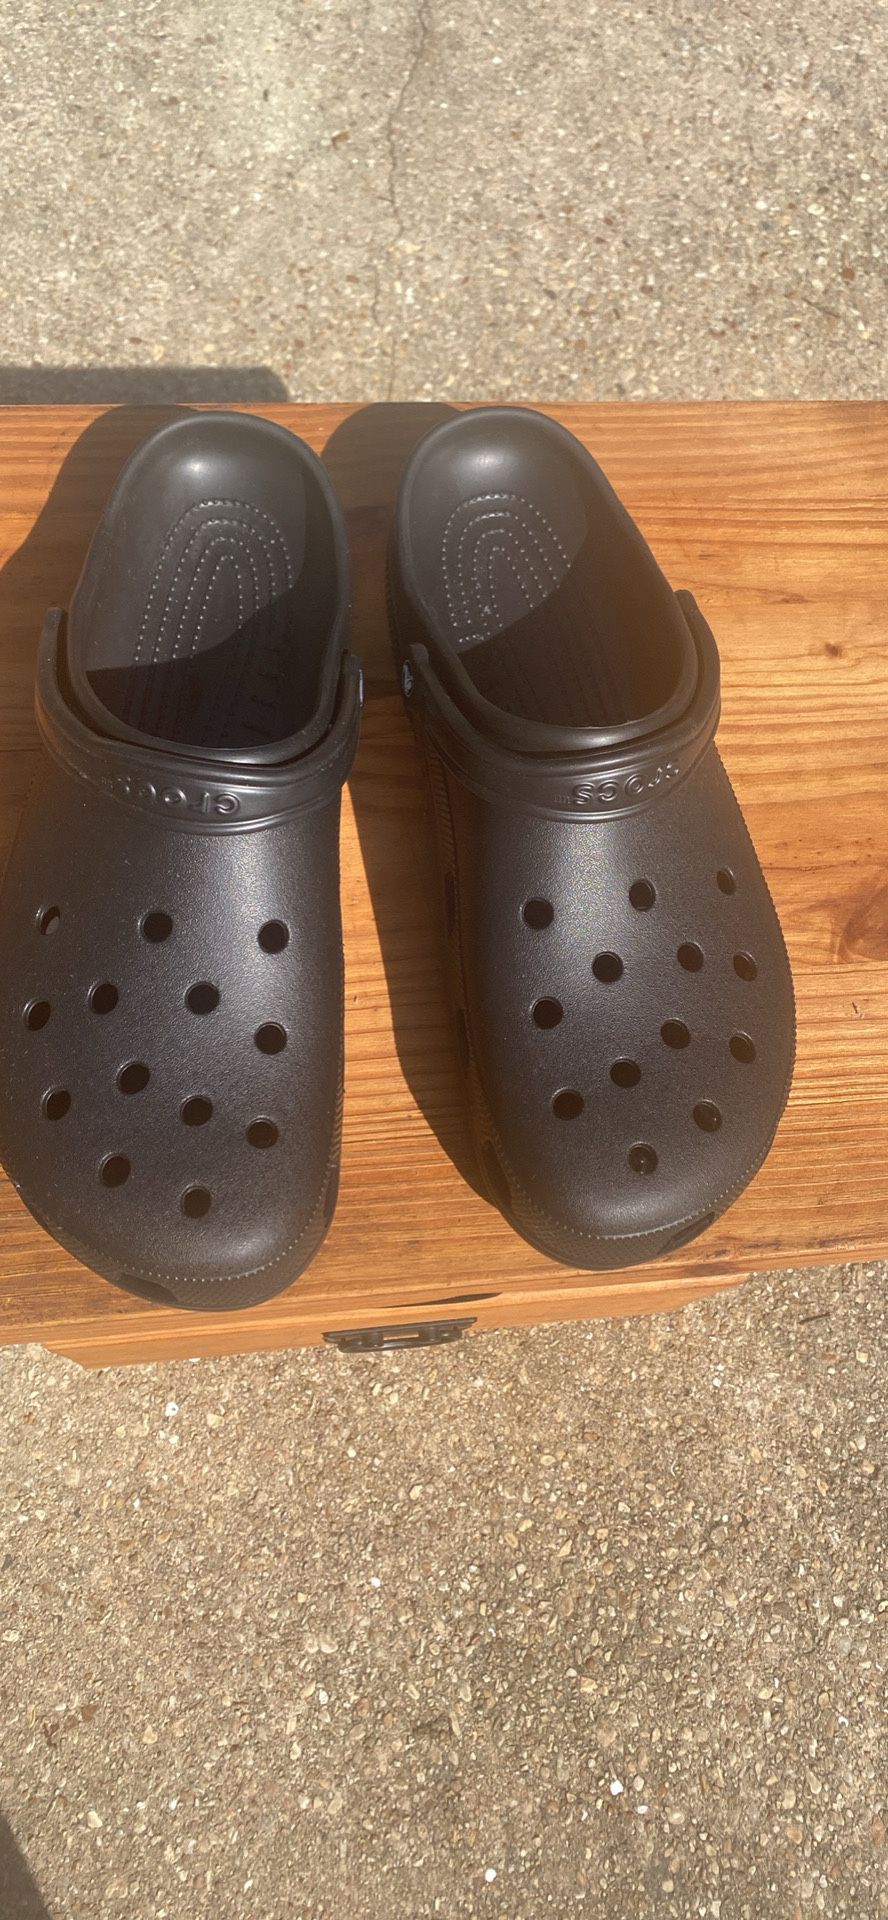 Size 17 Mens Crocs 